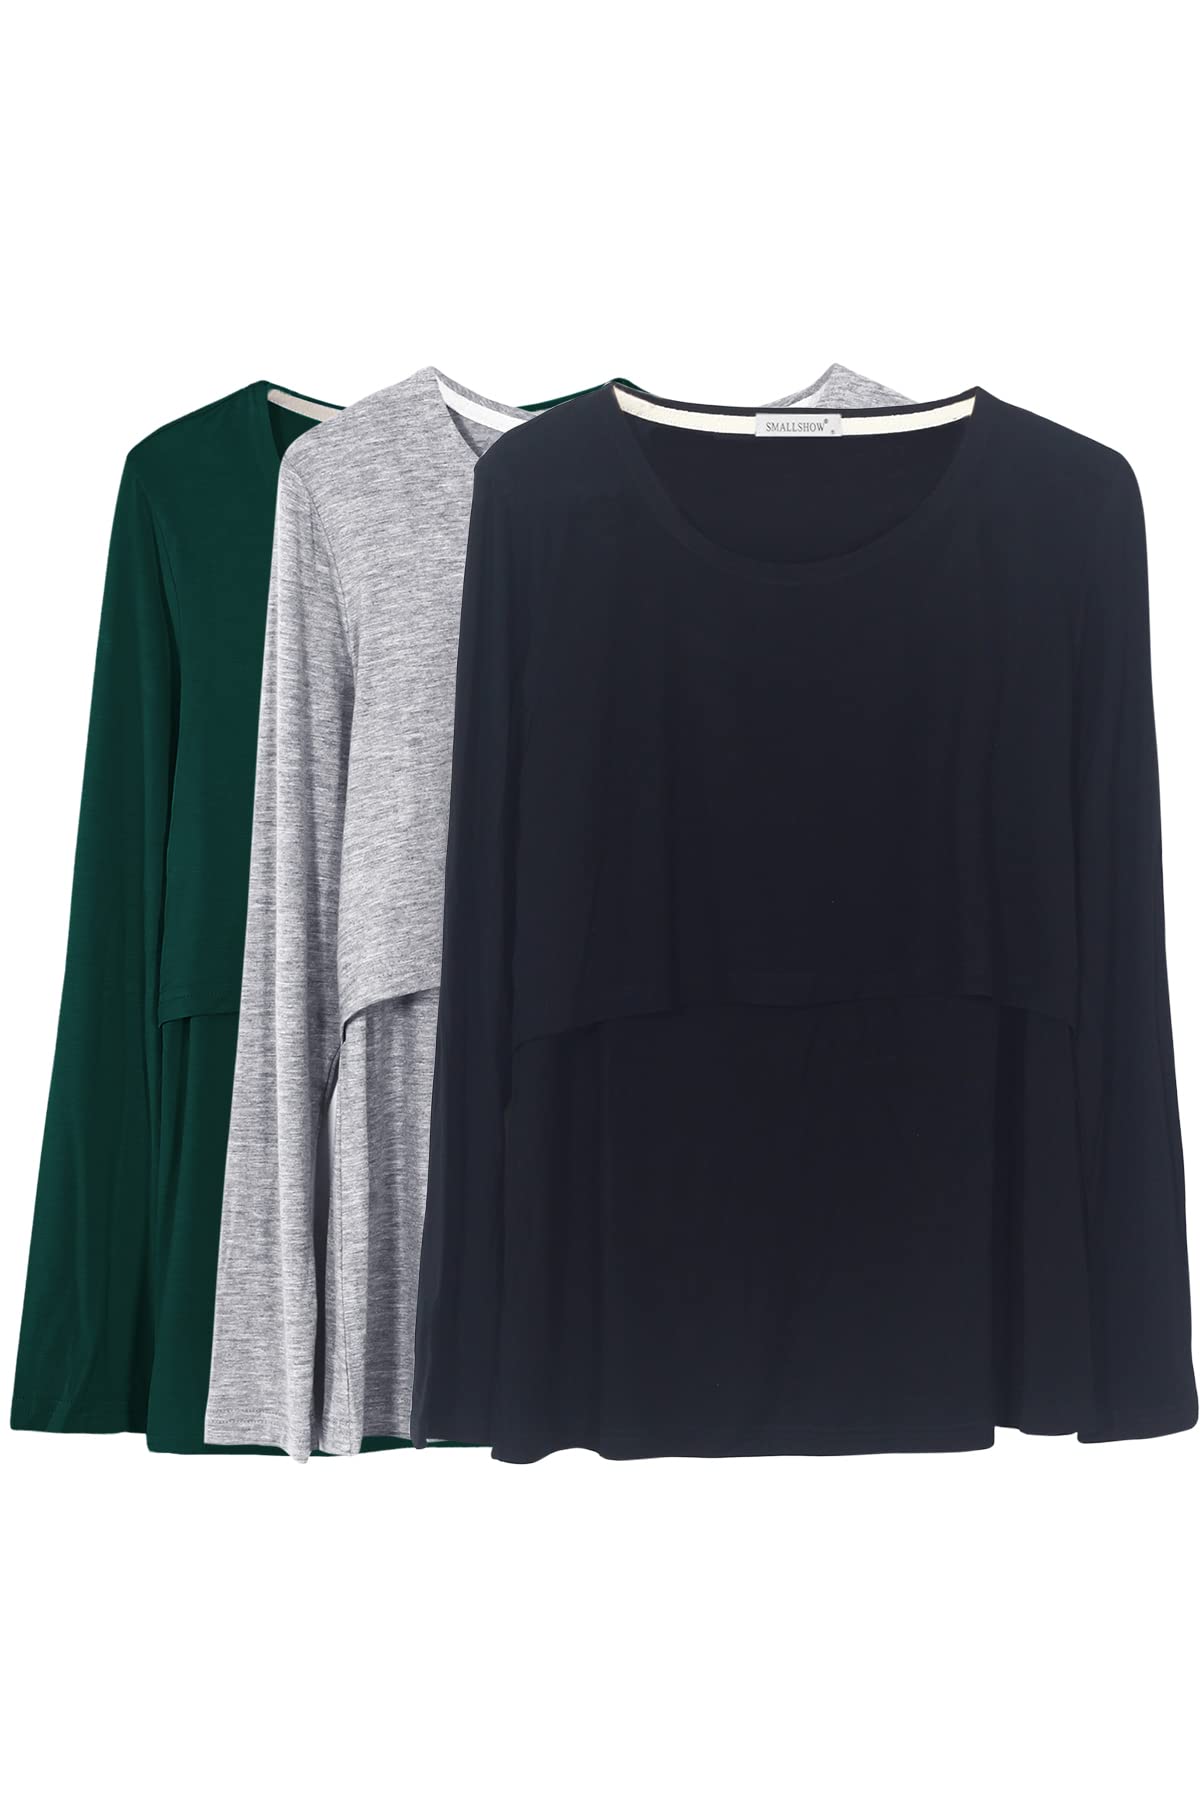 Smallshow Damen Stillshirt Langarm Umstandsshirt 3er Pack,Black/Grey/Deep Green,2XL